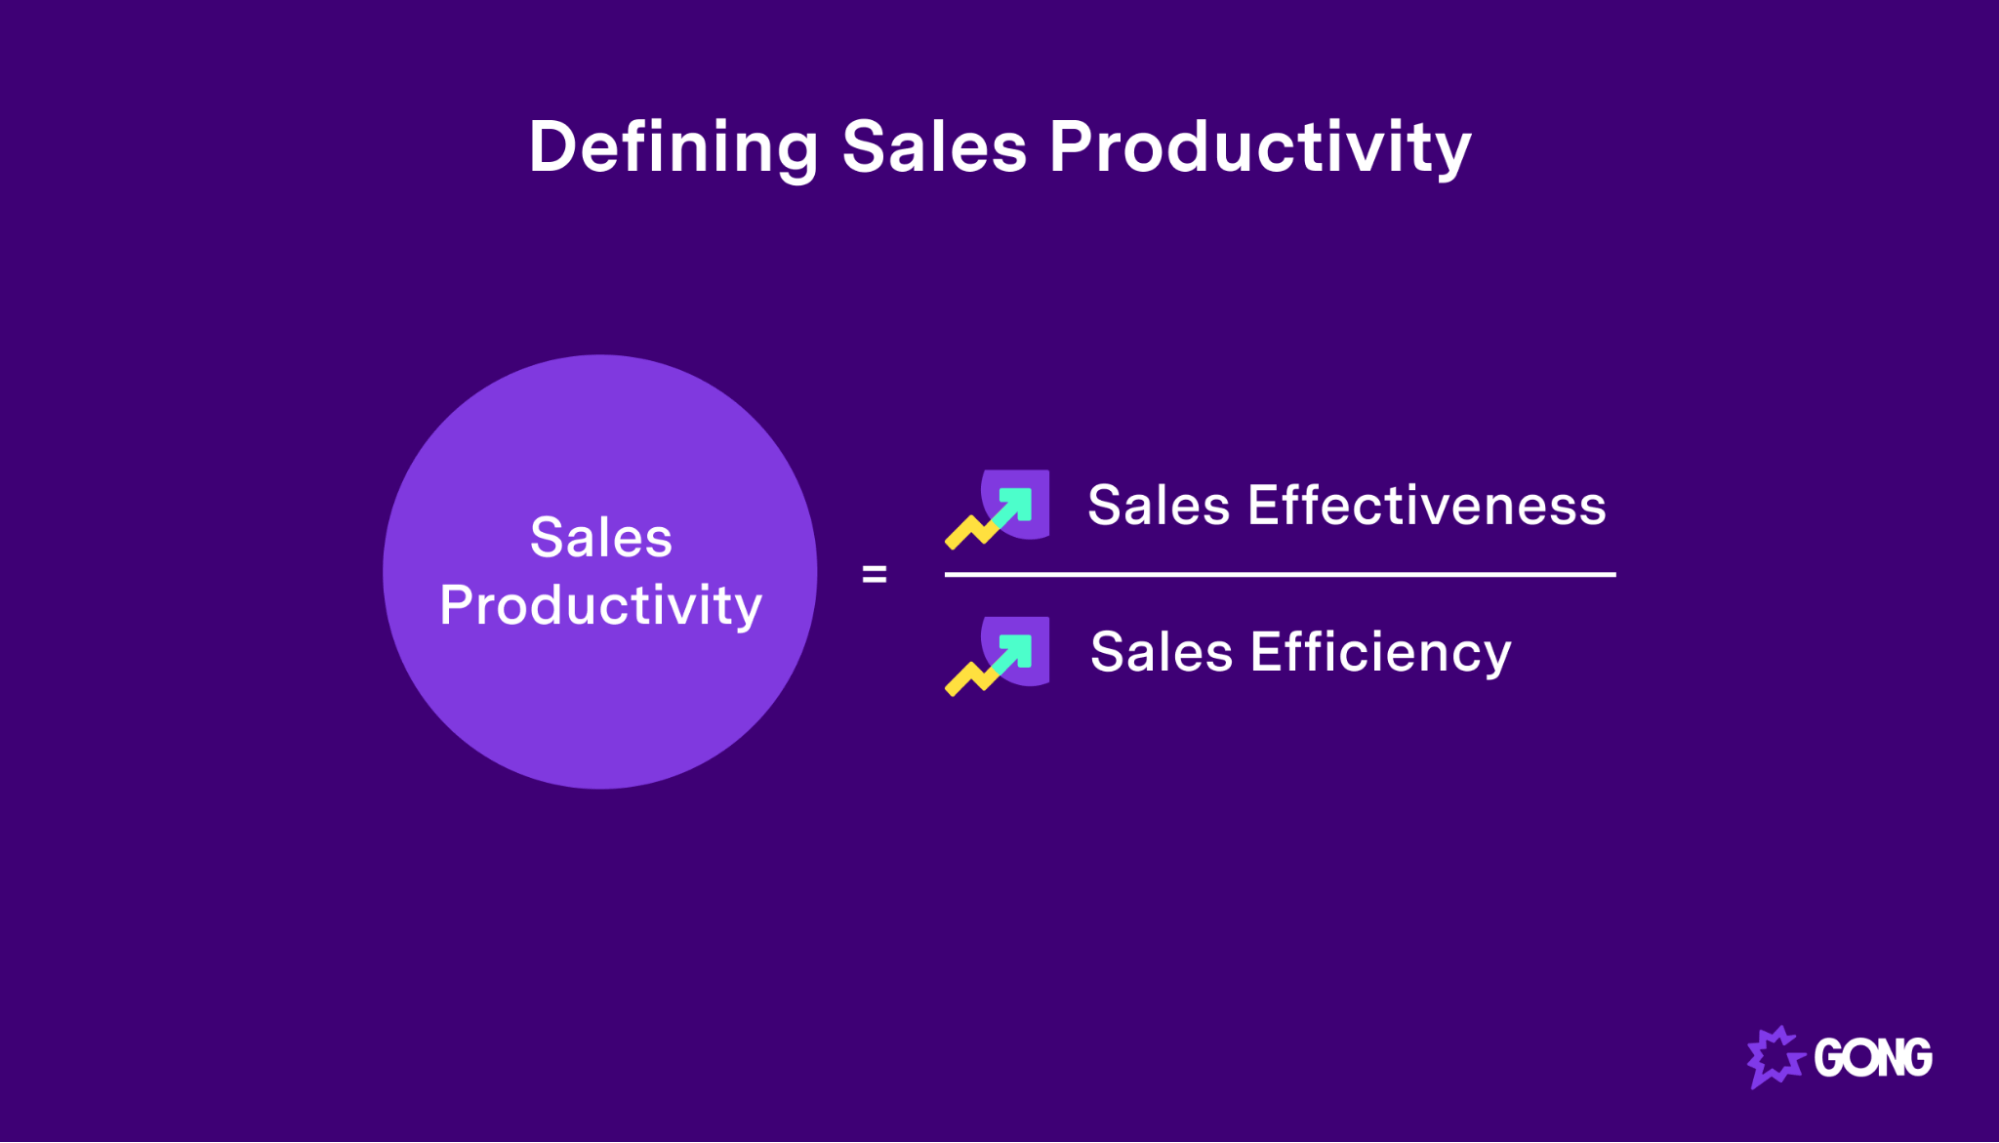 Sales Productivity = Sales Effectiveness / Sales Efficiency